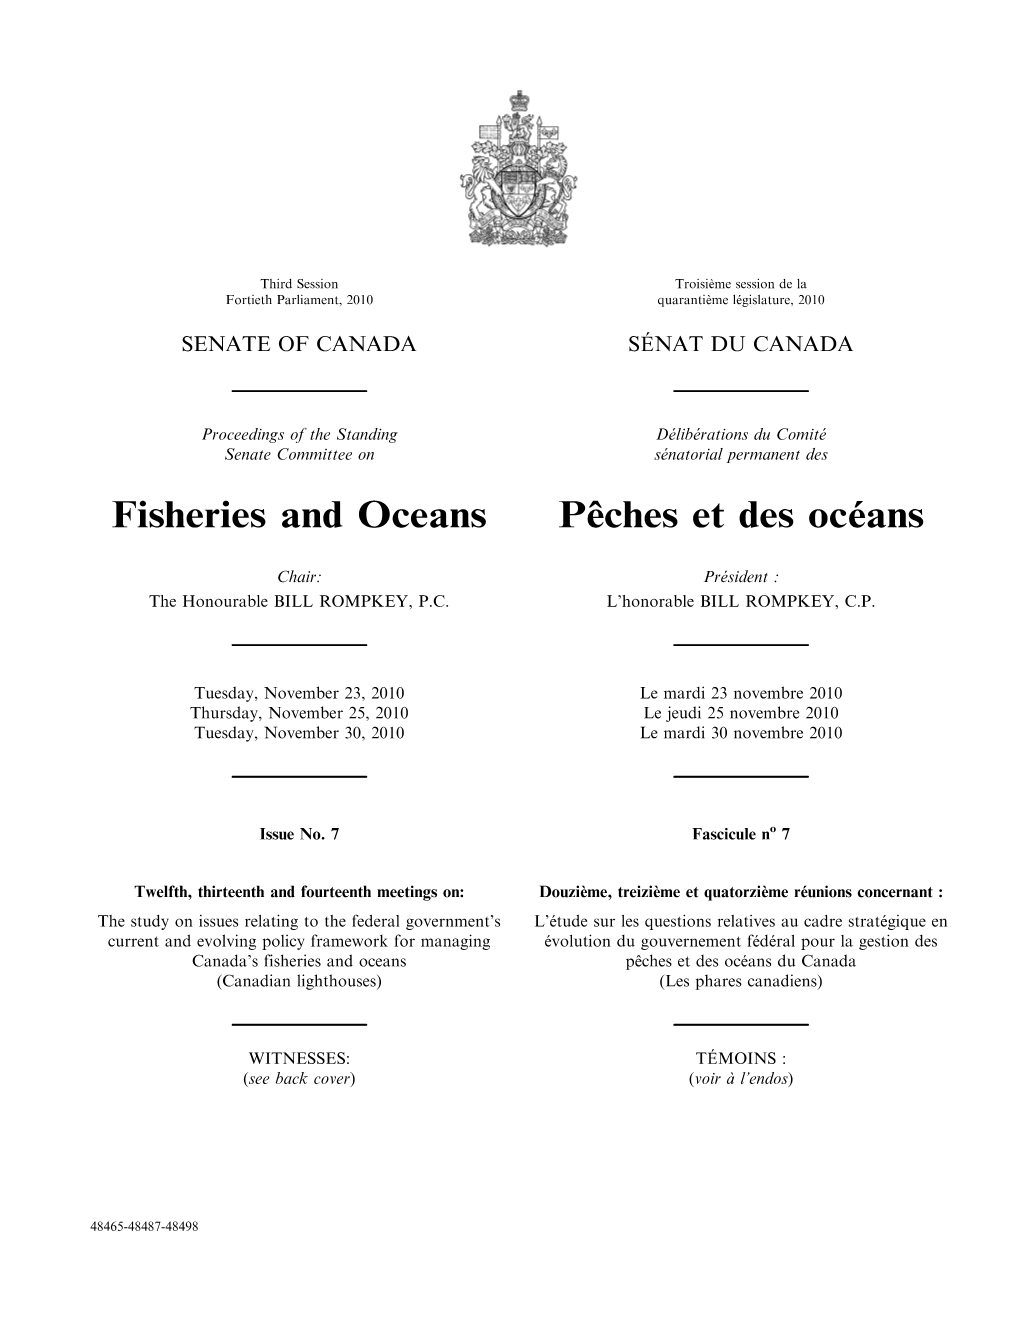 Fisheries and Oceans Pêches Et Des Océans